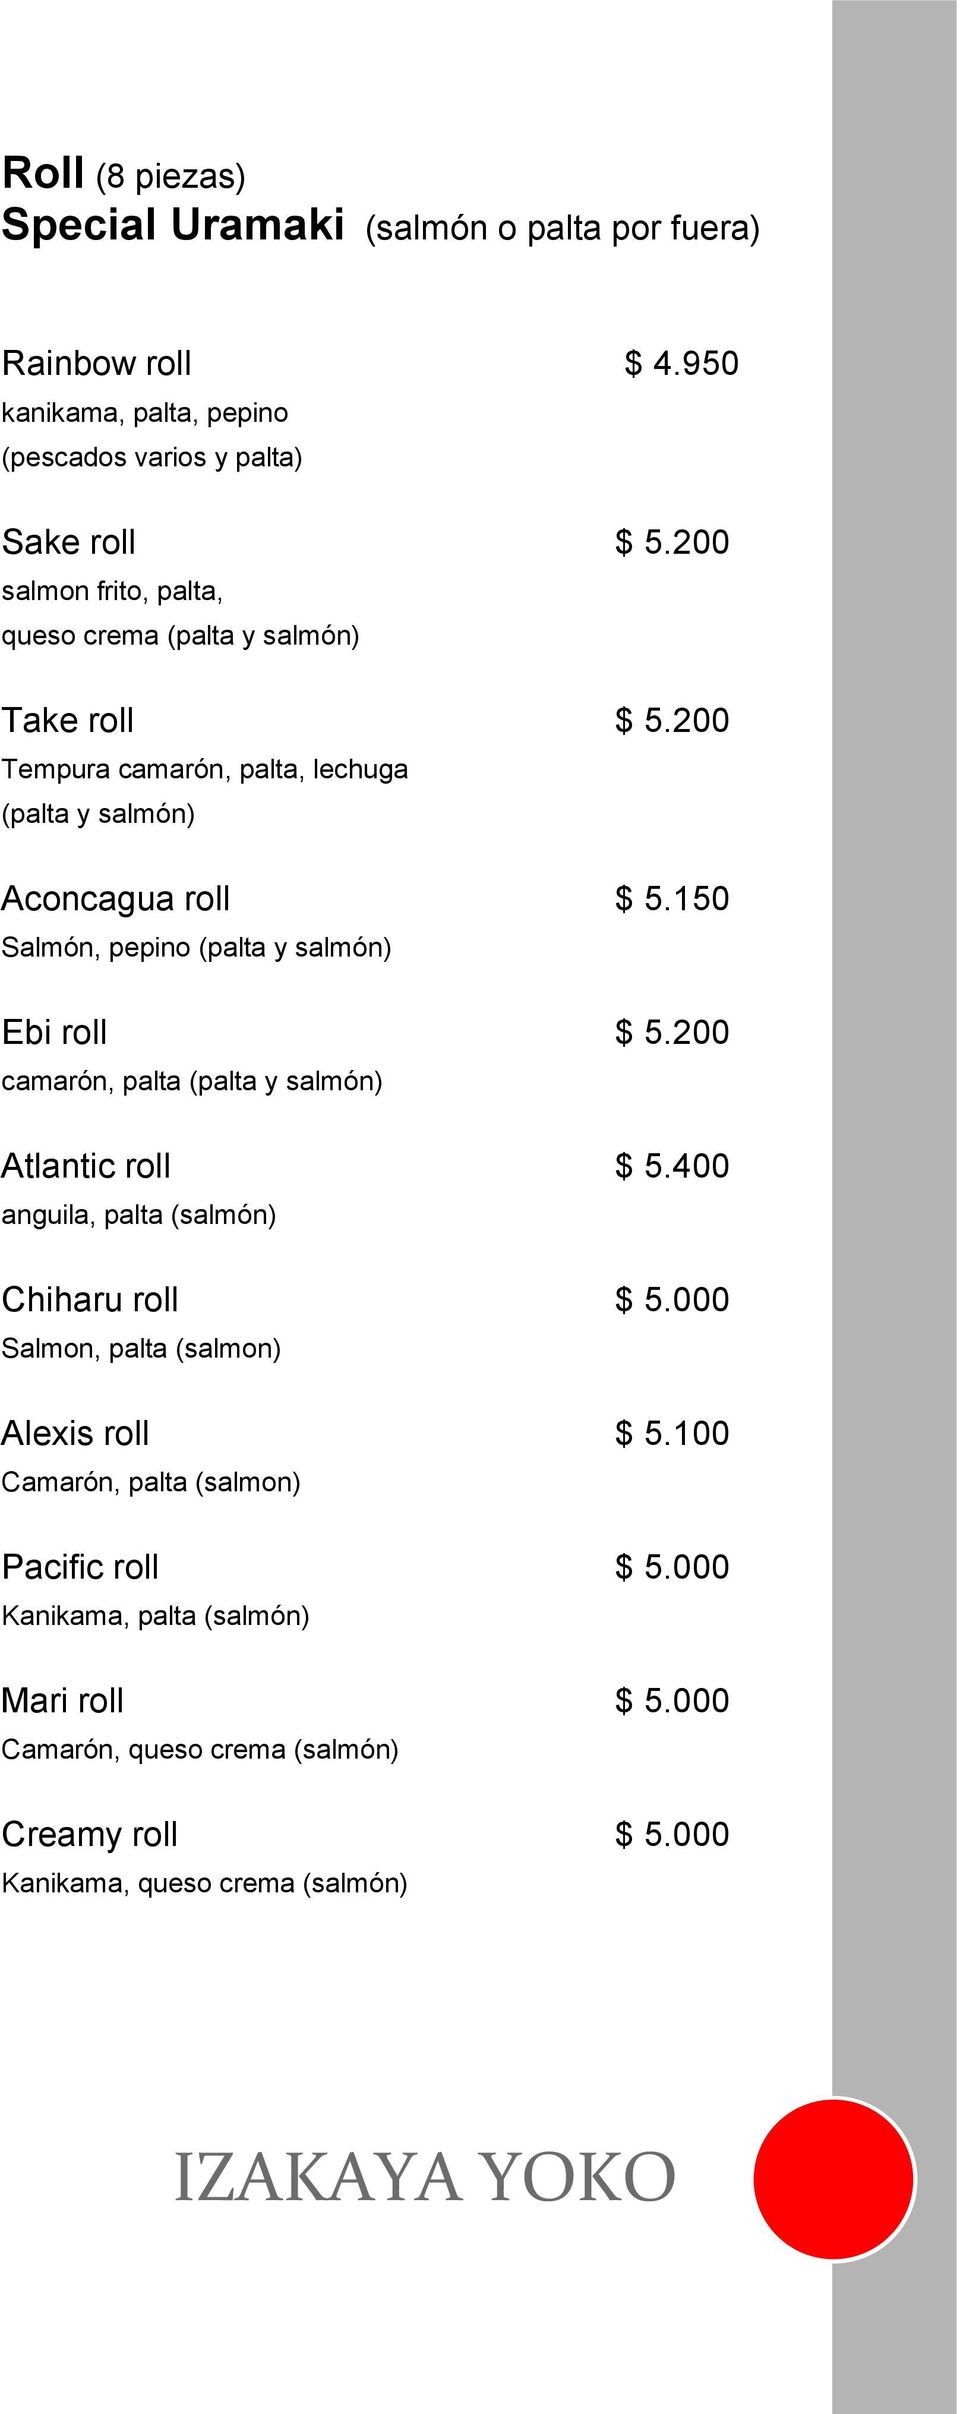 150 Salmón, pepino (palta y salmón) Ebi roll $ 5.200 camarón, palta (palta y salmón) Atlantic roll $ 5.400 anguila, palta (salmón) Chiharu roll $ 5.